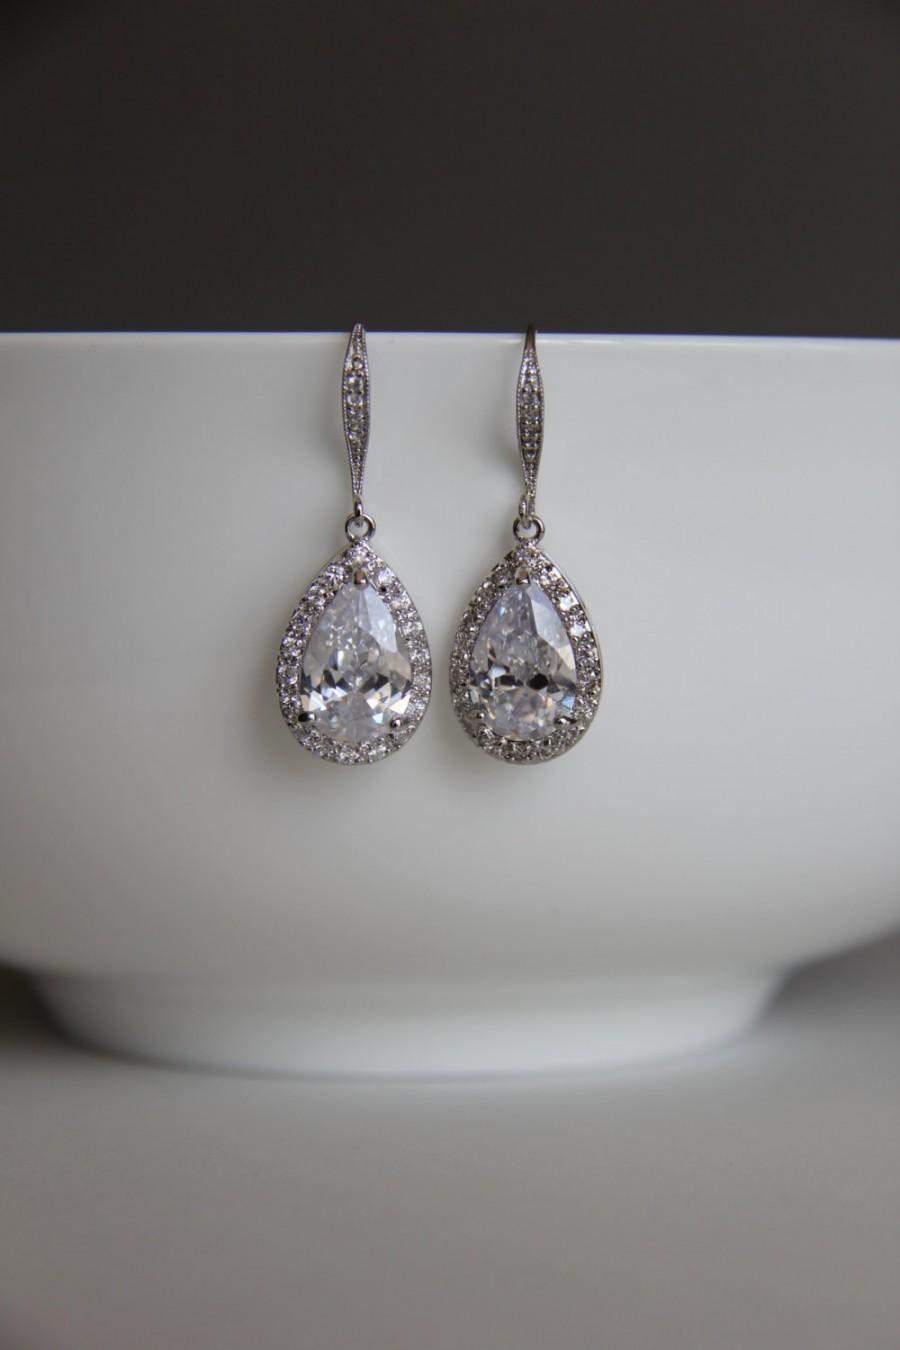 Wedding - Bridal earrings, cz earrings, wedding earrings, bridesmaid earrings, bridal jewelry, wedding jewelry, cz jewelry, dangley earrings